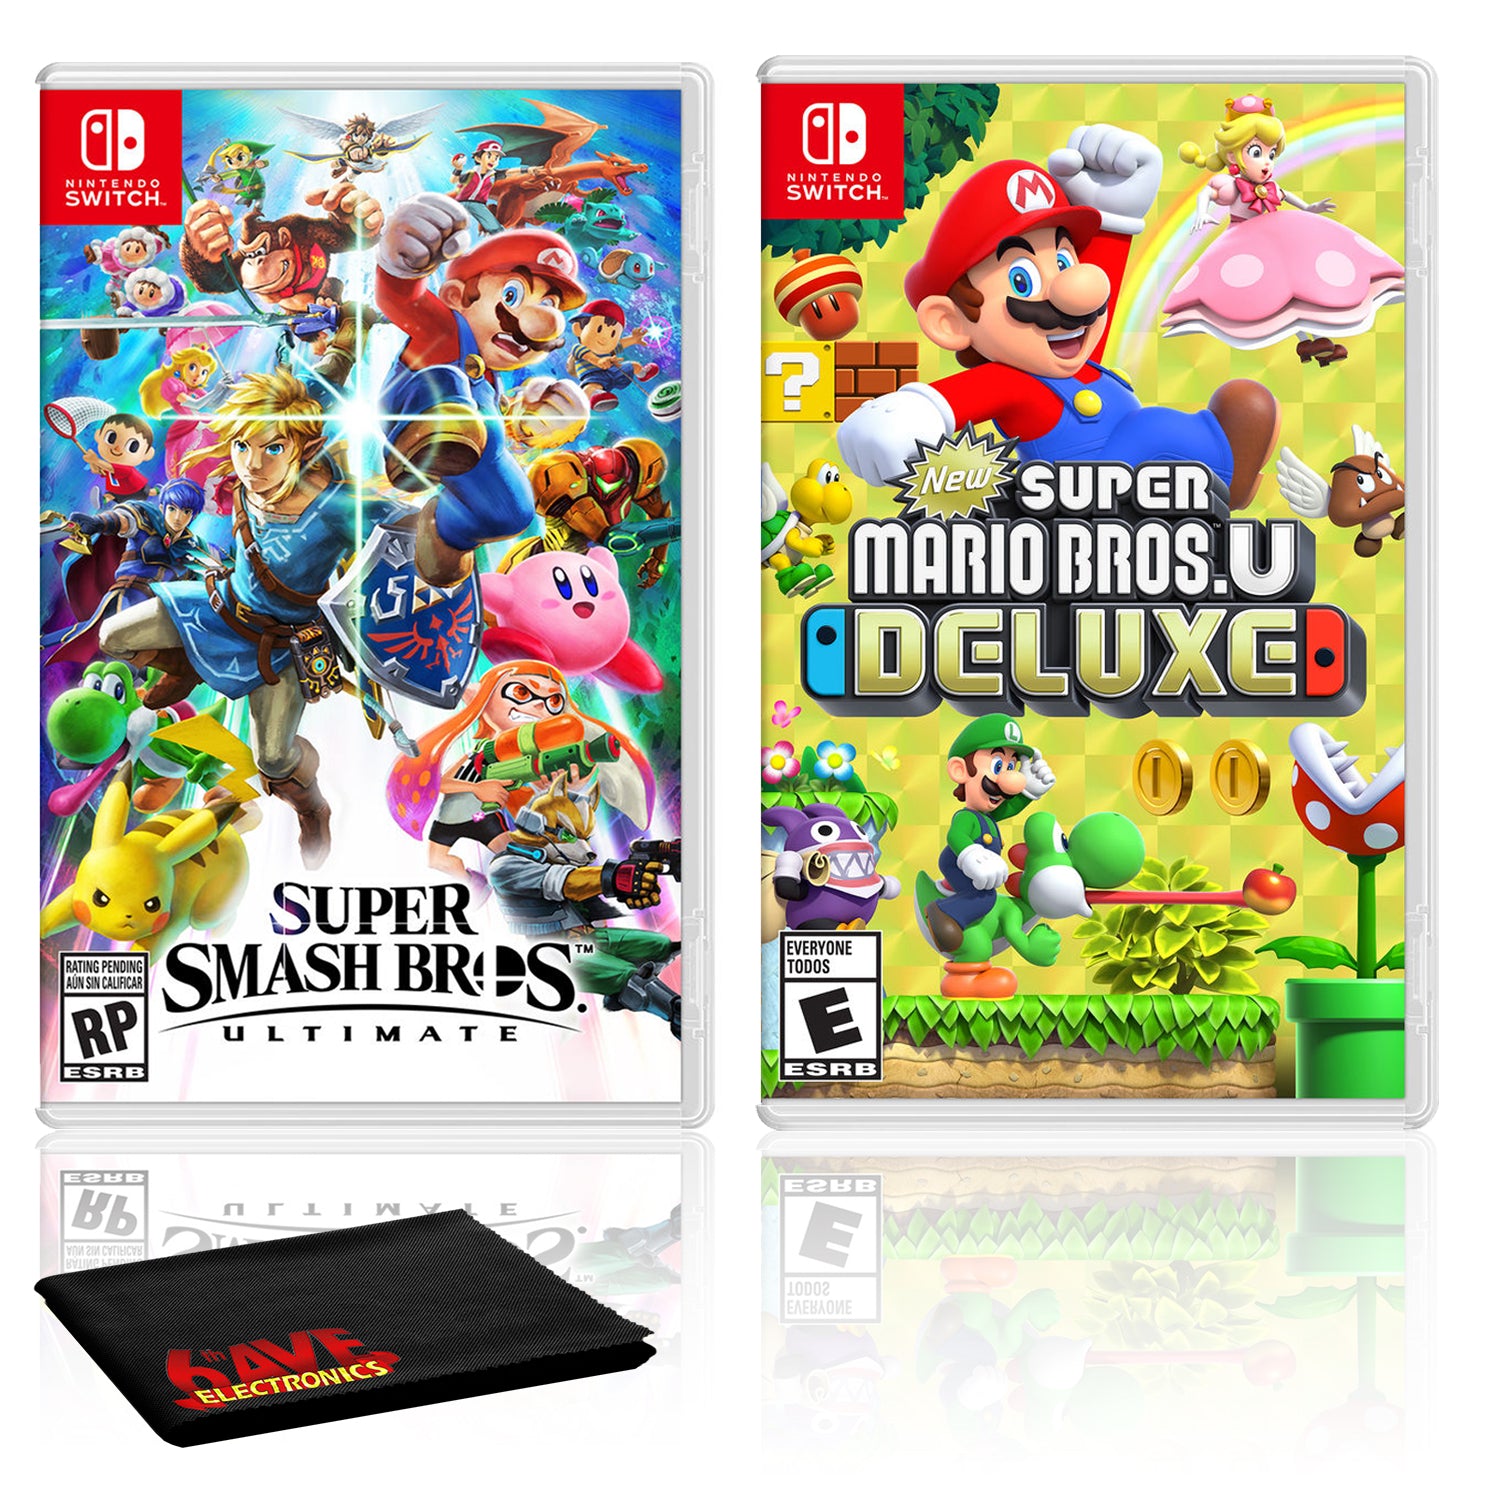 Nintendo Super Smash Bros. Ultimate Bundle with New Super Mario Bros. U Deluxe